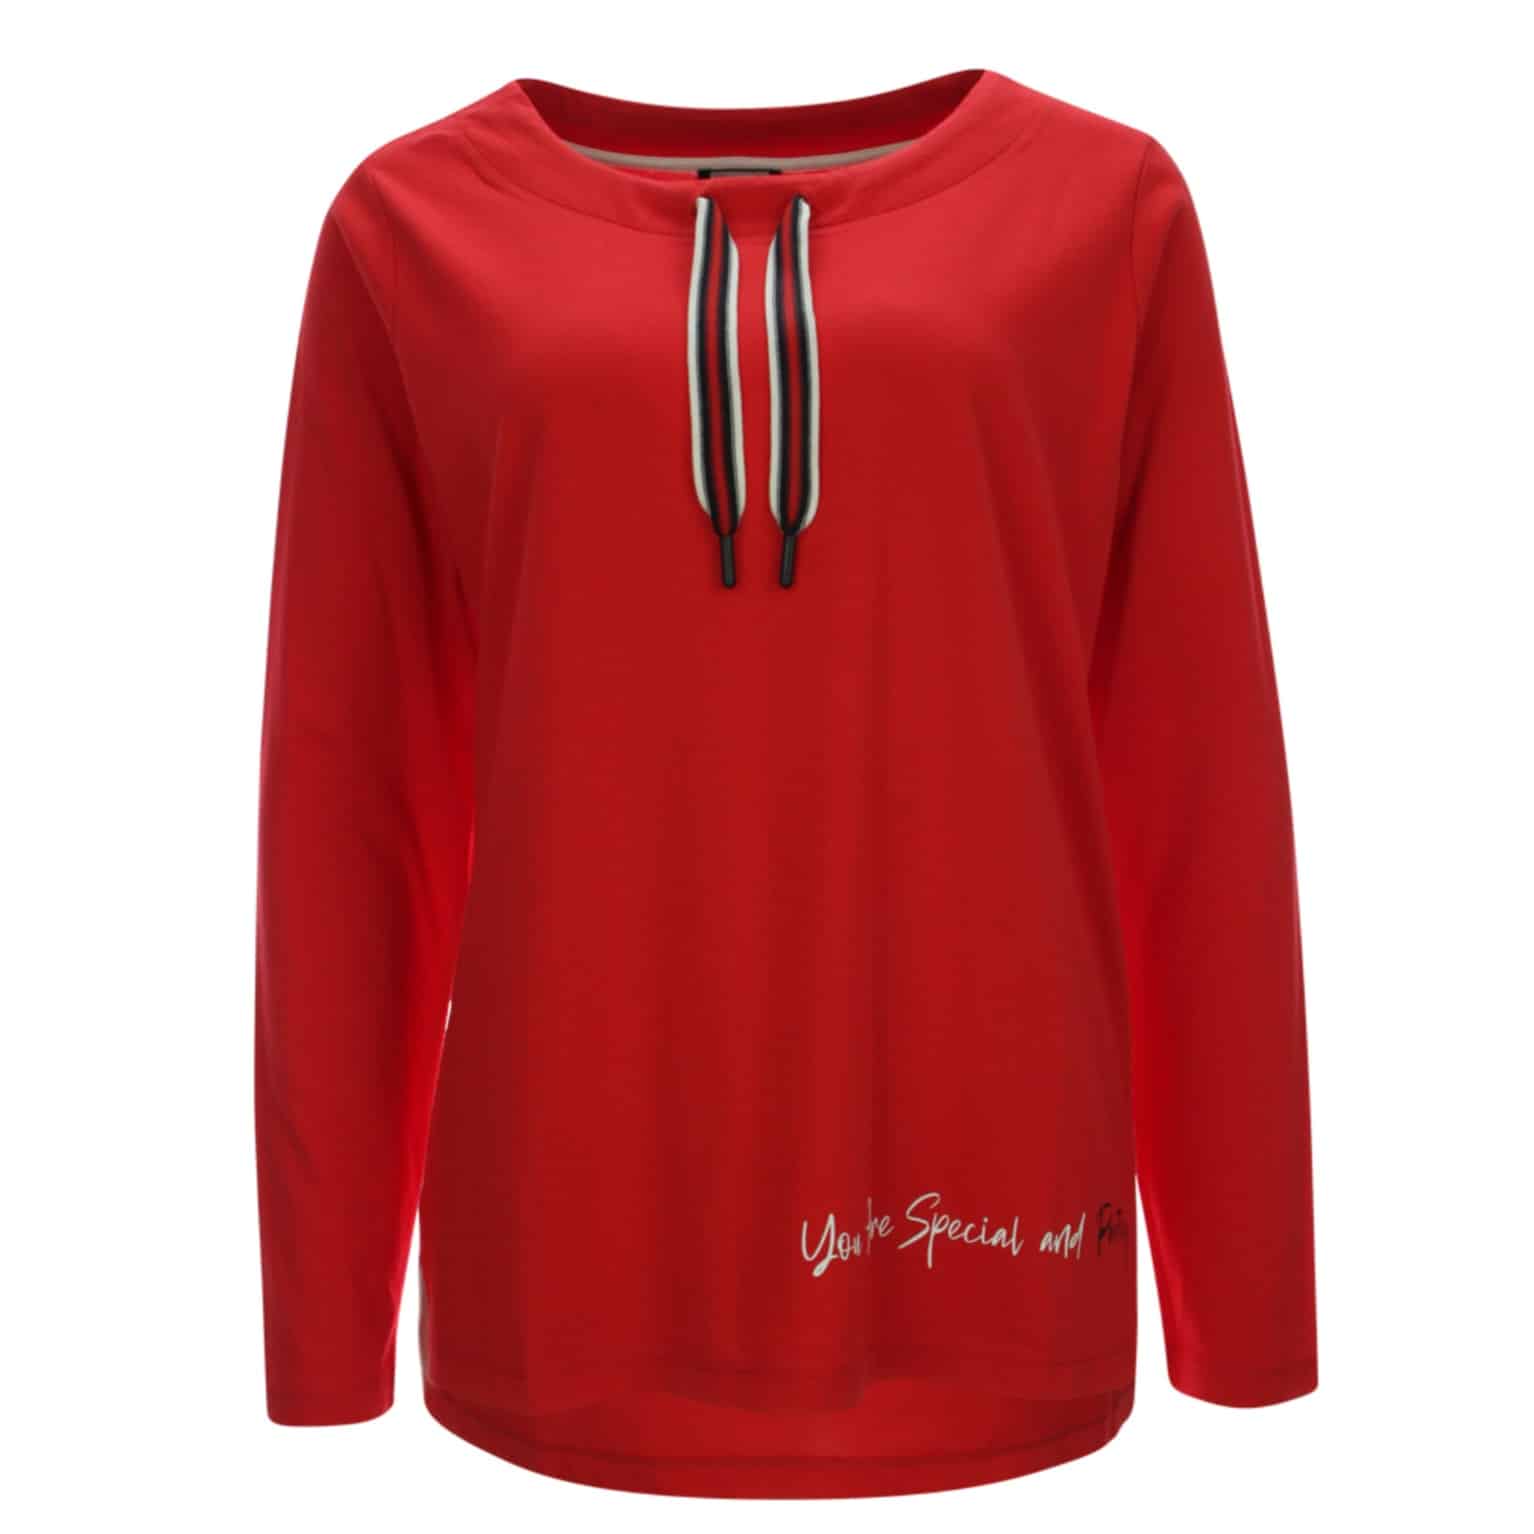 Legeres Langarm T-Shirt von Kenny S in rot mit Kragentunnel Art. 670604 bei Mode Sabine Lemke in Winnenden im Remstal oder im Onlineshop shoppen